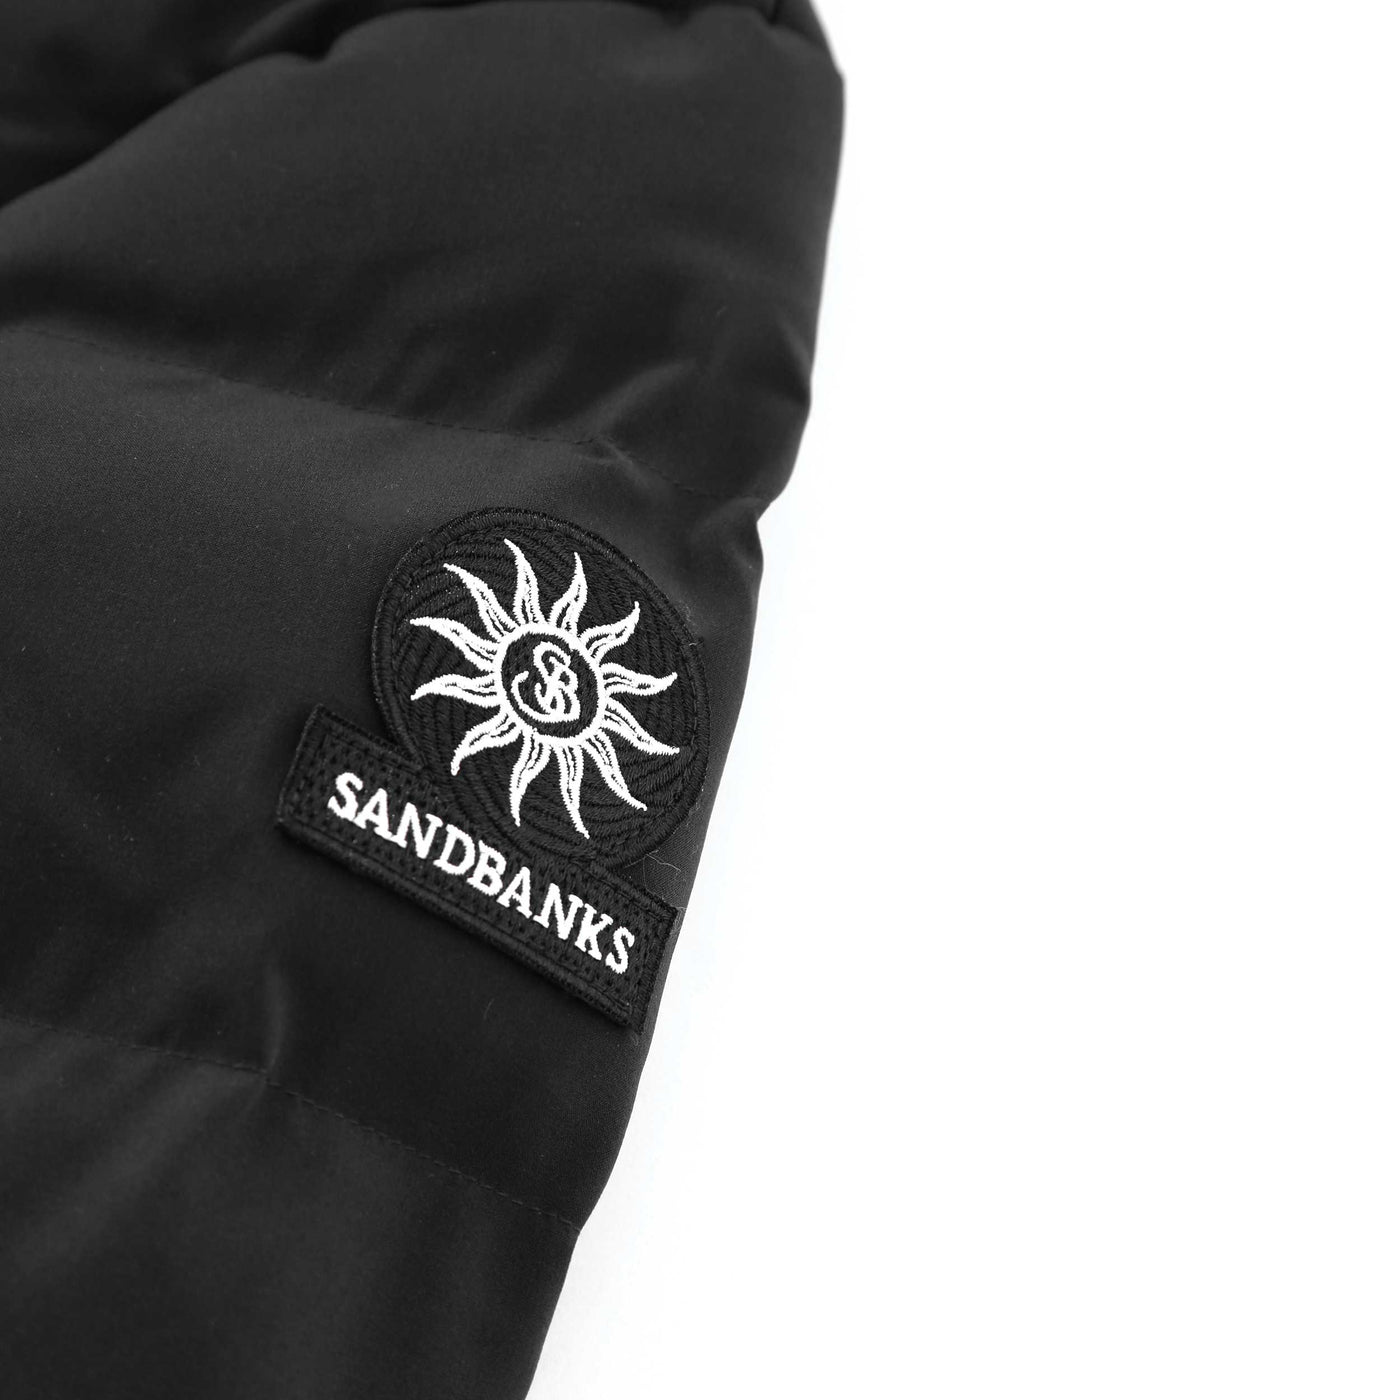 Sandbanks Banks Puffer Jacket in Black Logo